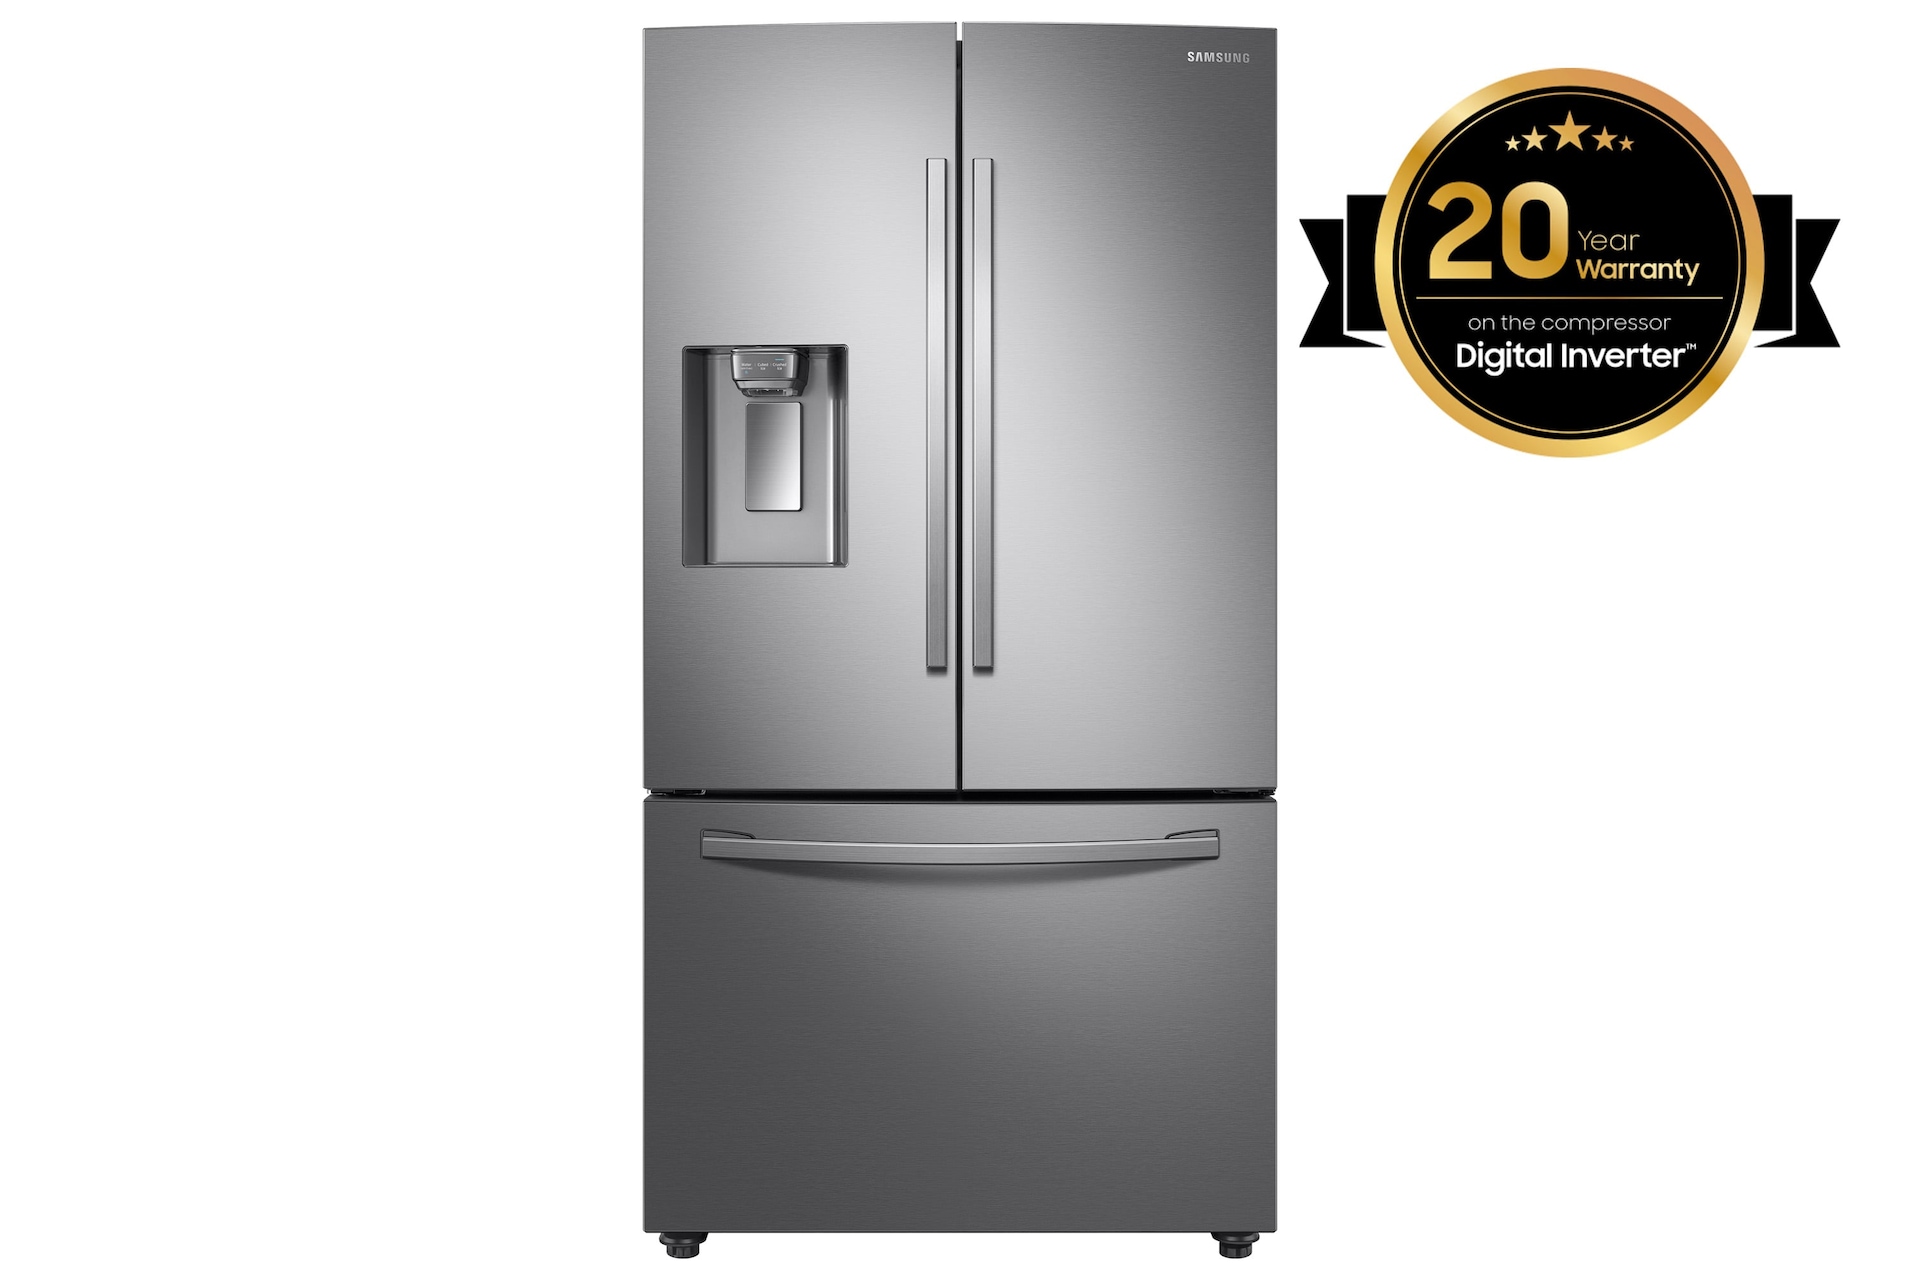 Samsung - réfrigérateur américain 91cm 520l a+ nofrost noir